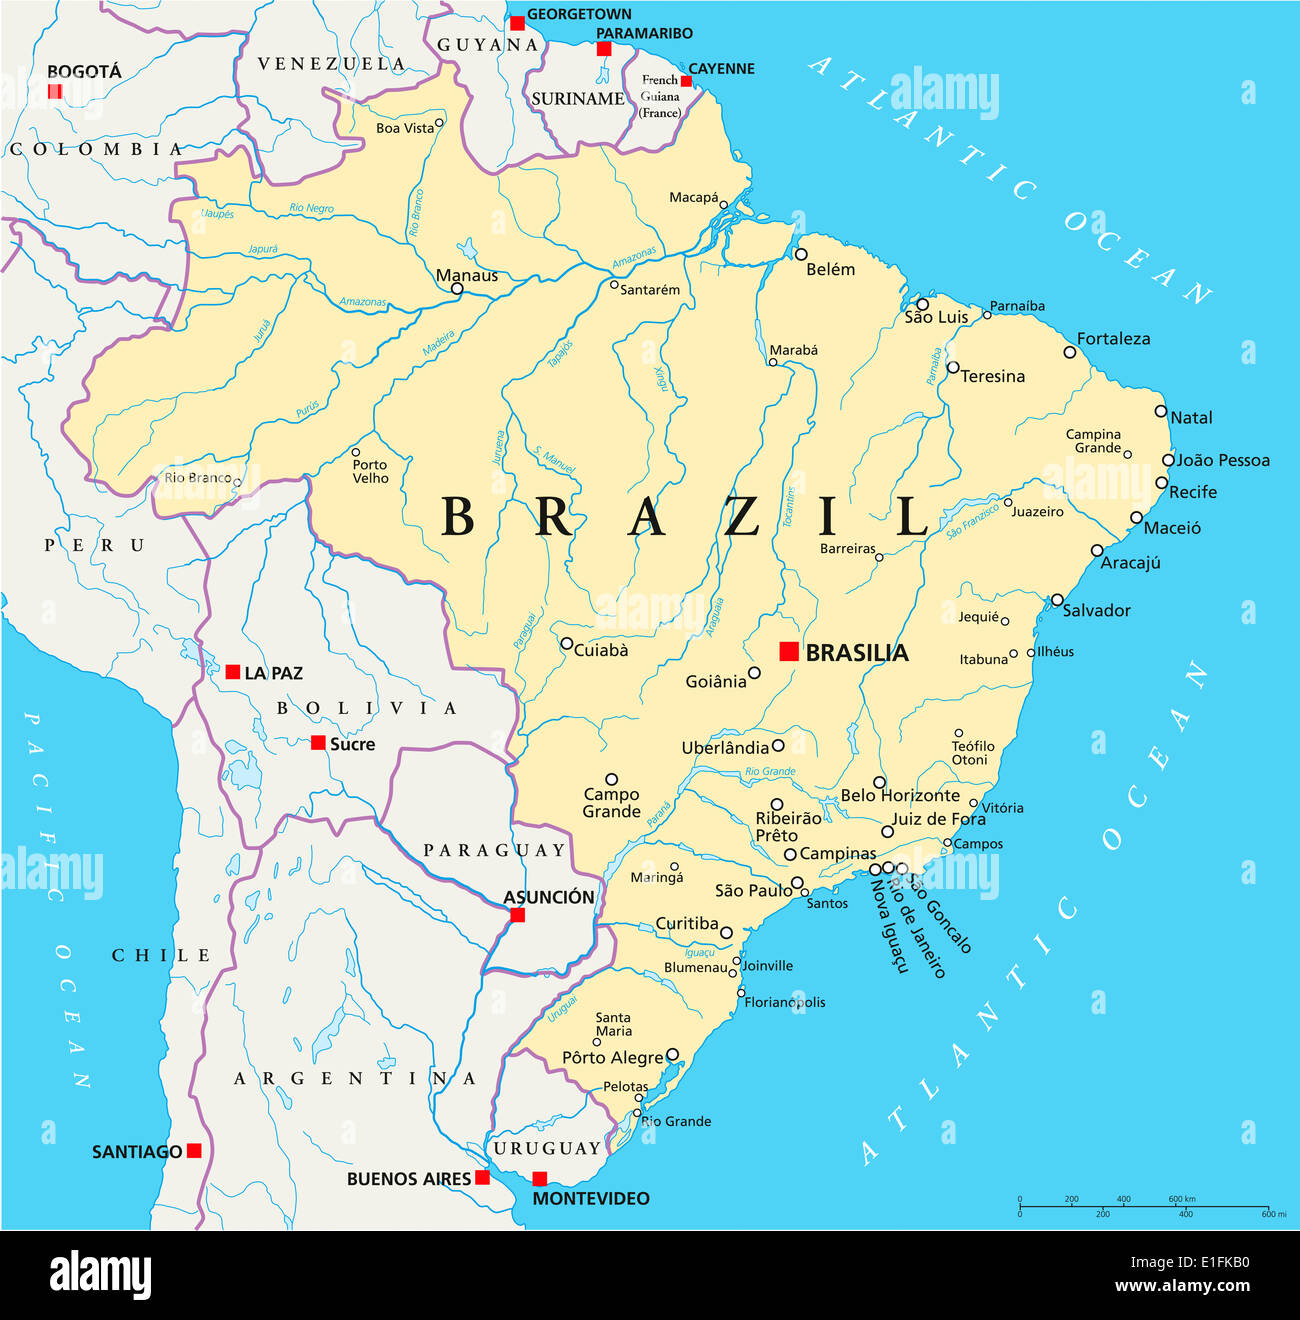 Brasilien Landkarte mit Hauptstadt Brasilia, Landesgrenzen, die wichtigsten Städte, Flüsse und Seen. Mit englischer Beschriftung. Stockfoto